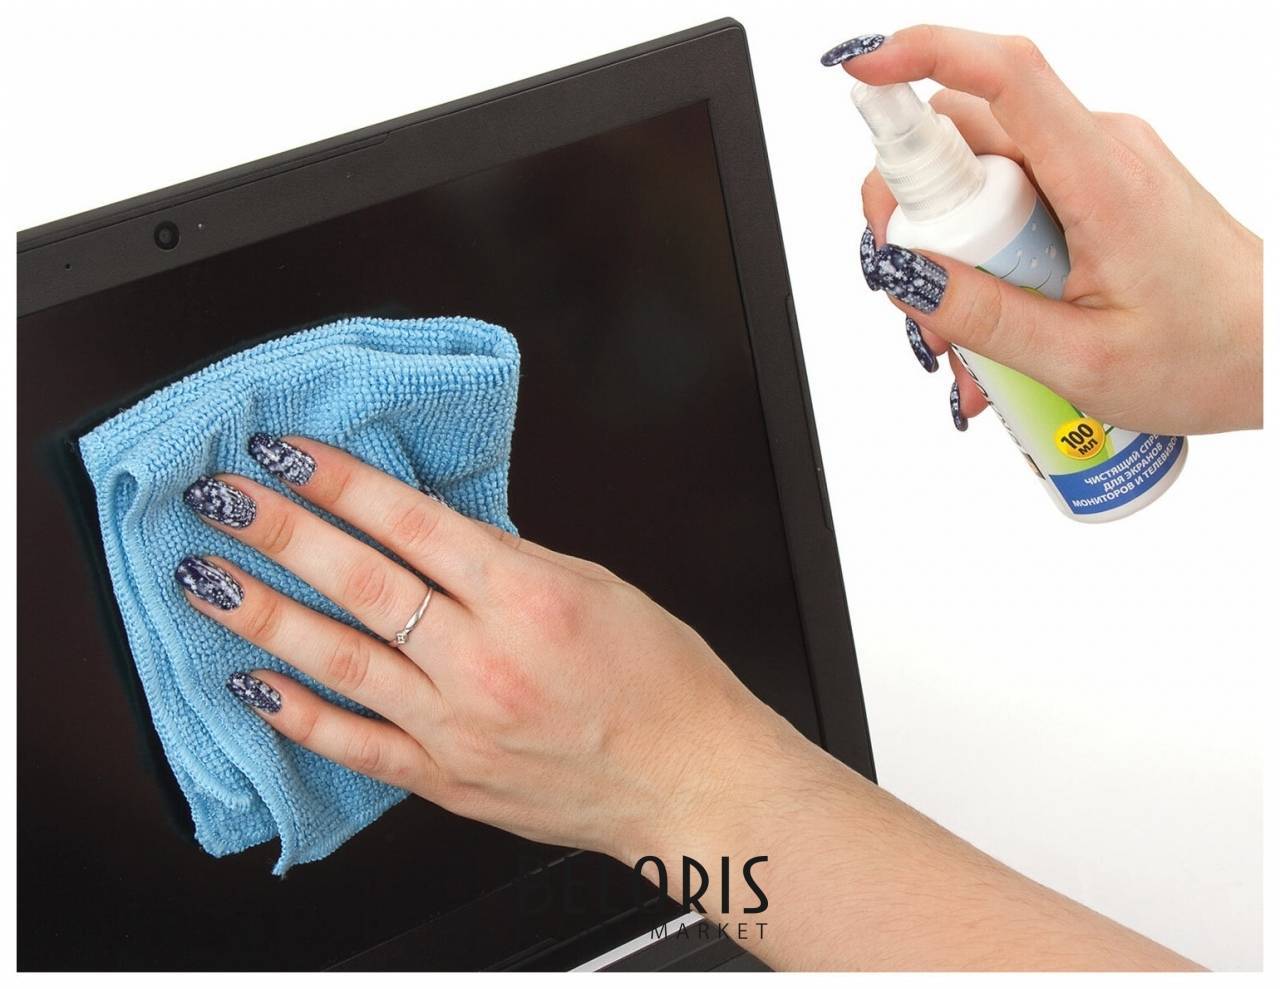 Как почистить экран жк телевизора: популярные способы и лучшие моющие средства